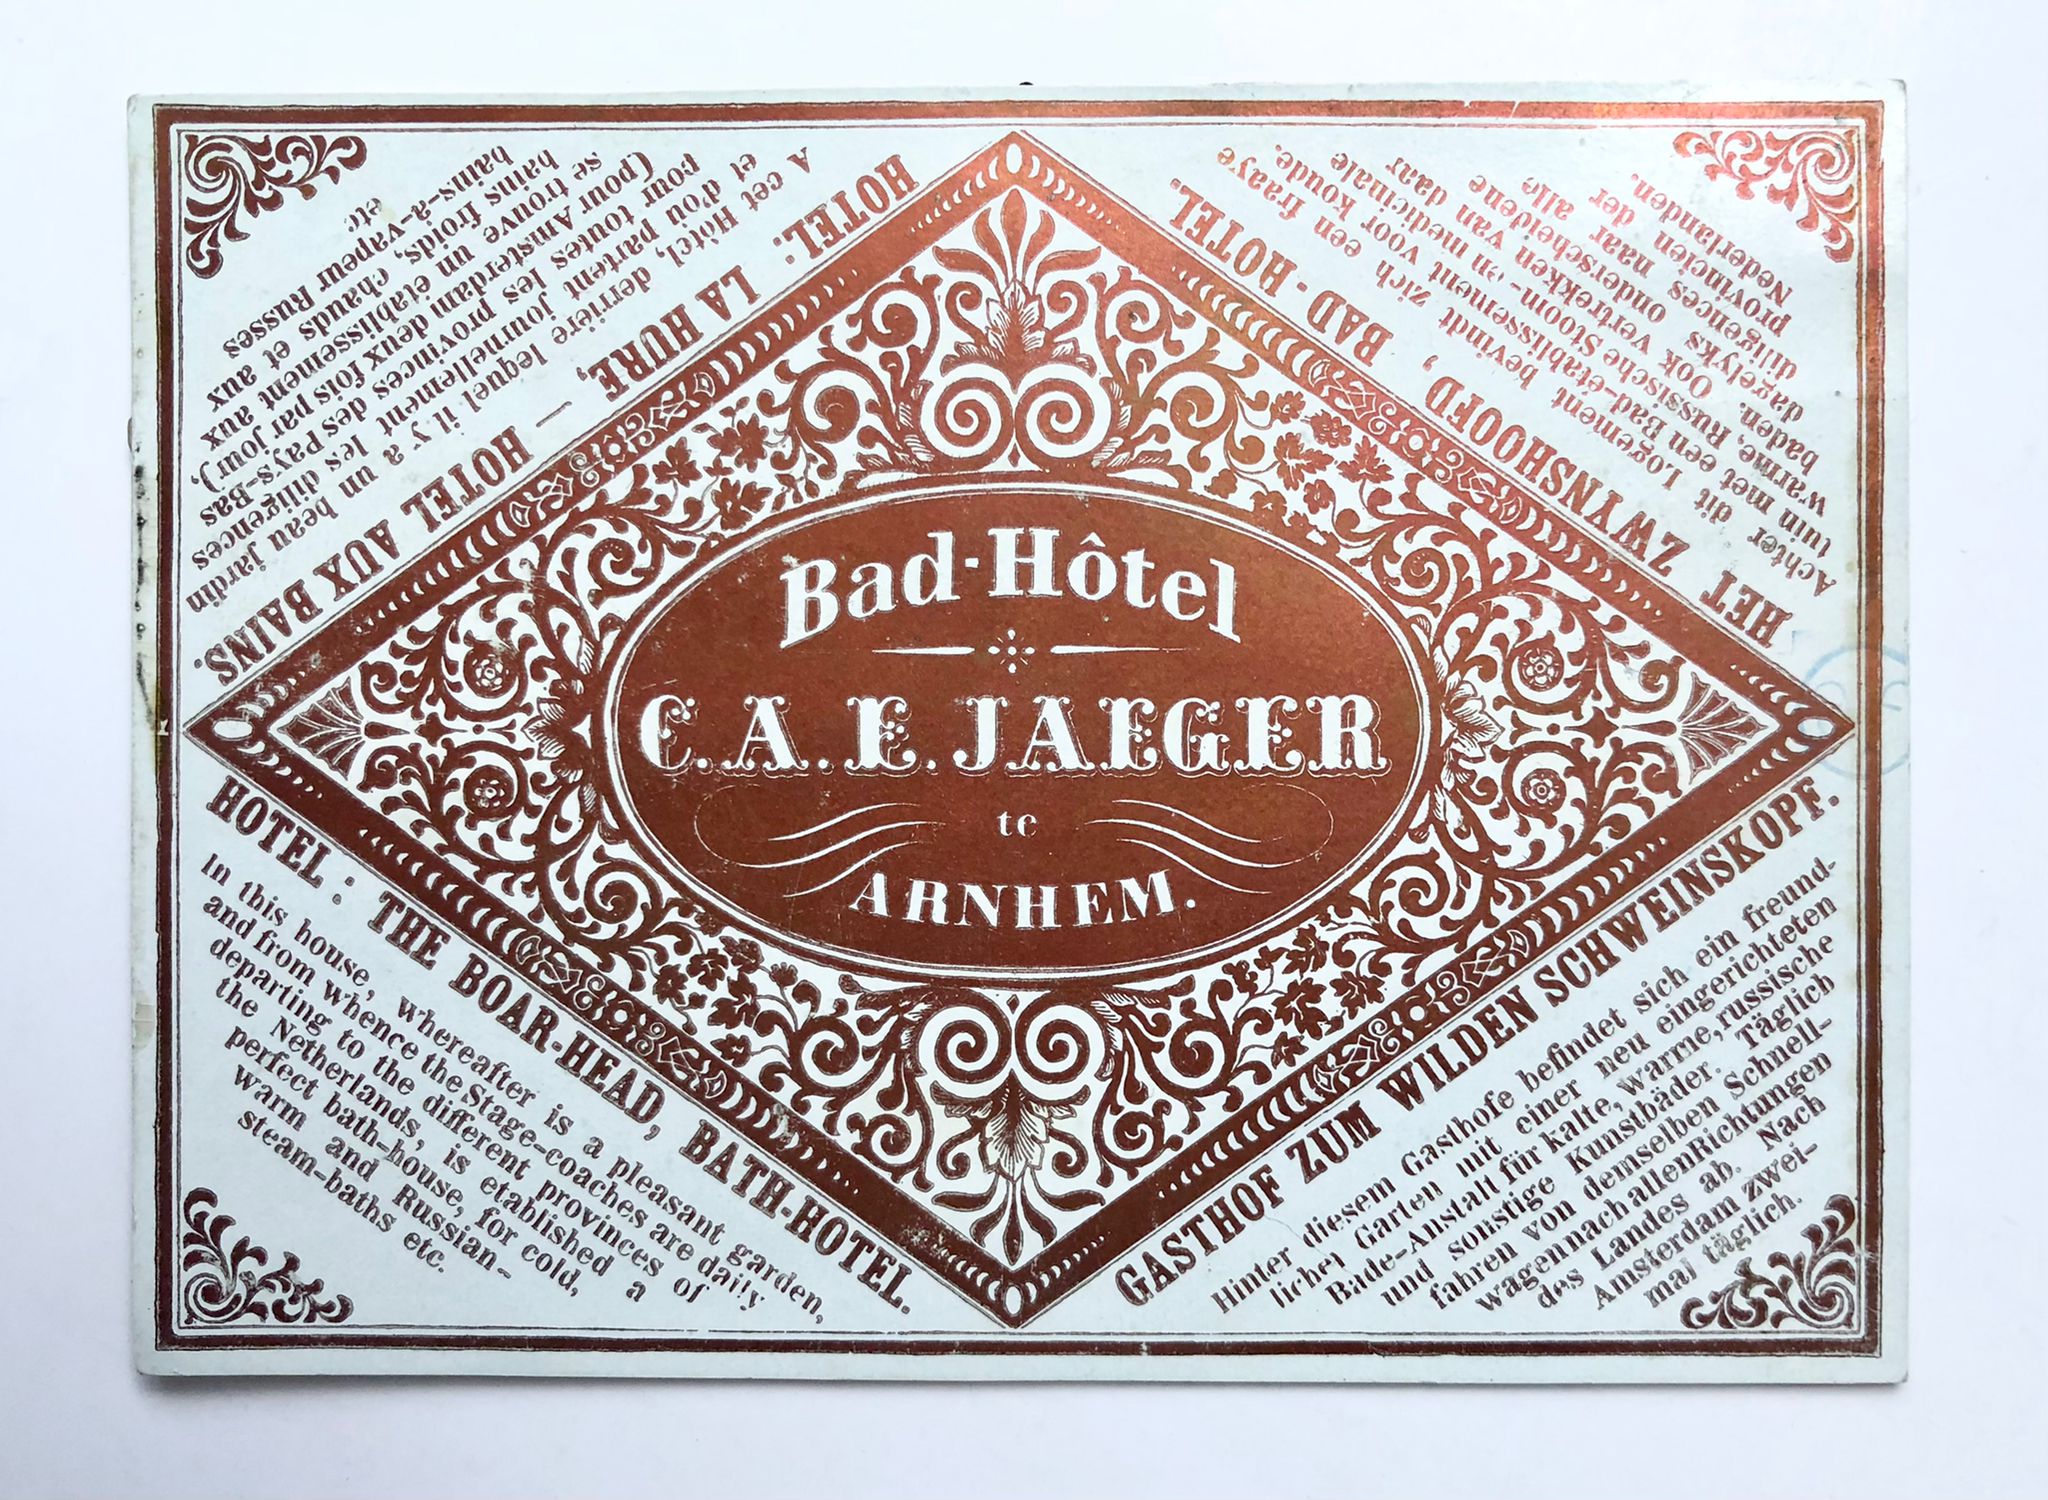  - [Address card, Arnhem, ca 1850] Adress card in porcelain print of Bad Hotel C.A.E. Jaeger in Arnhem, ca. 1850, 1 p.